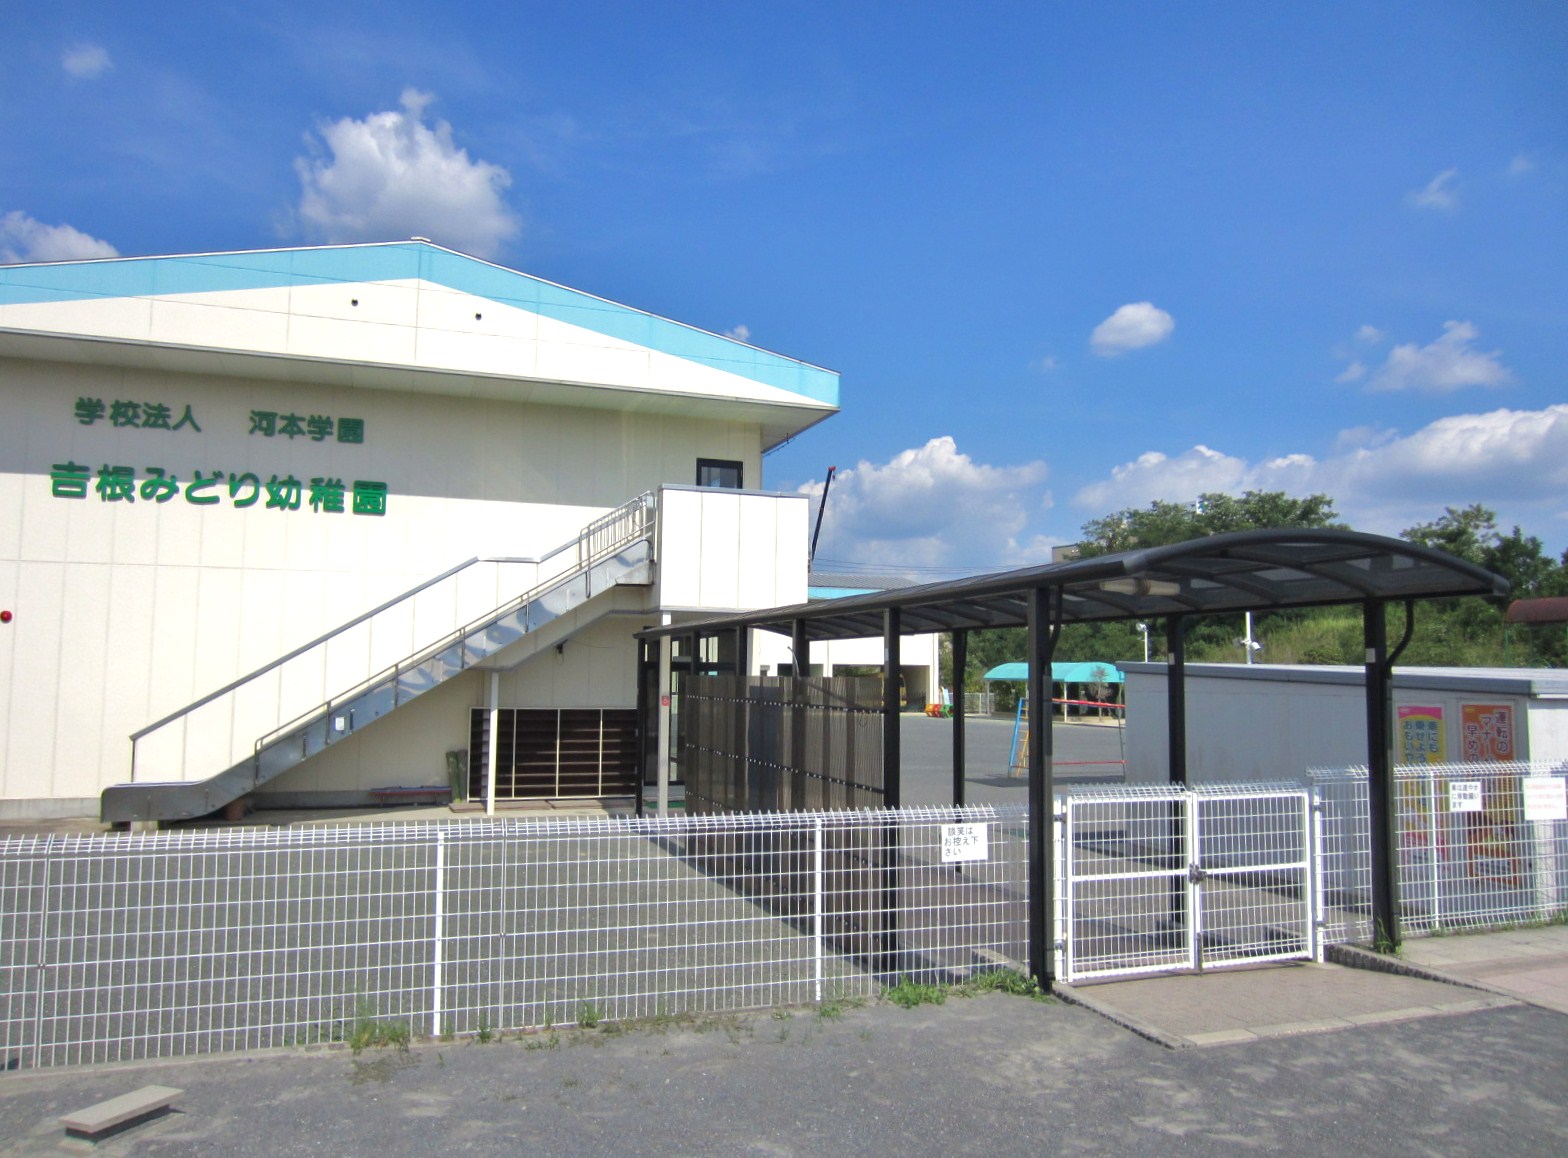 kindergarten ・ Nursery. Midori Yoshine kindergarten (kindergarten ・ 1331m to the nursery)